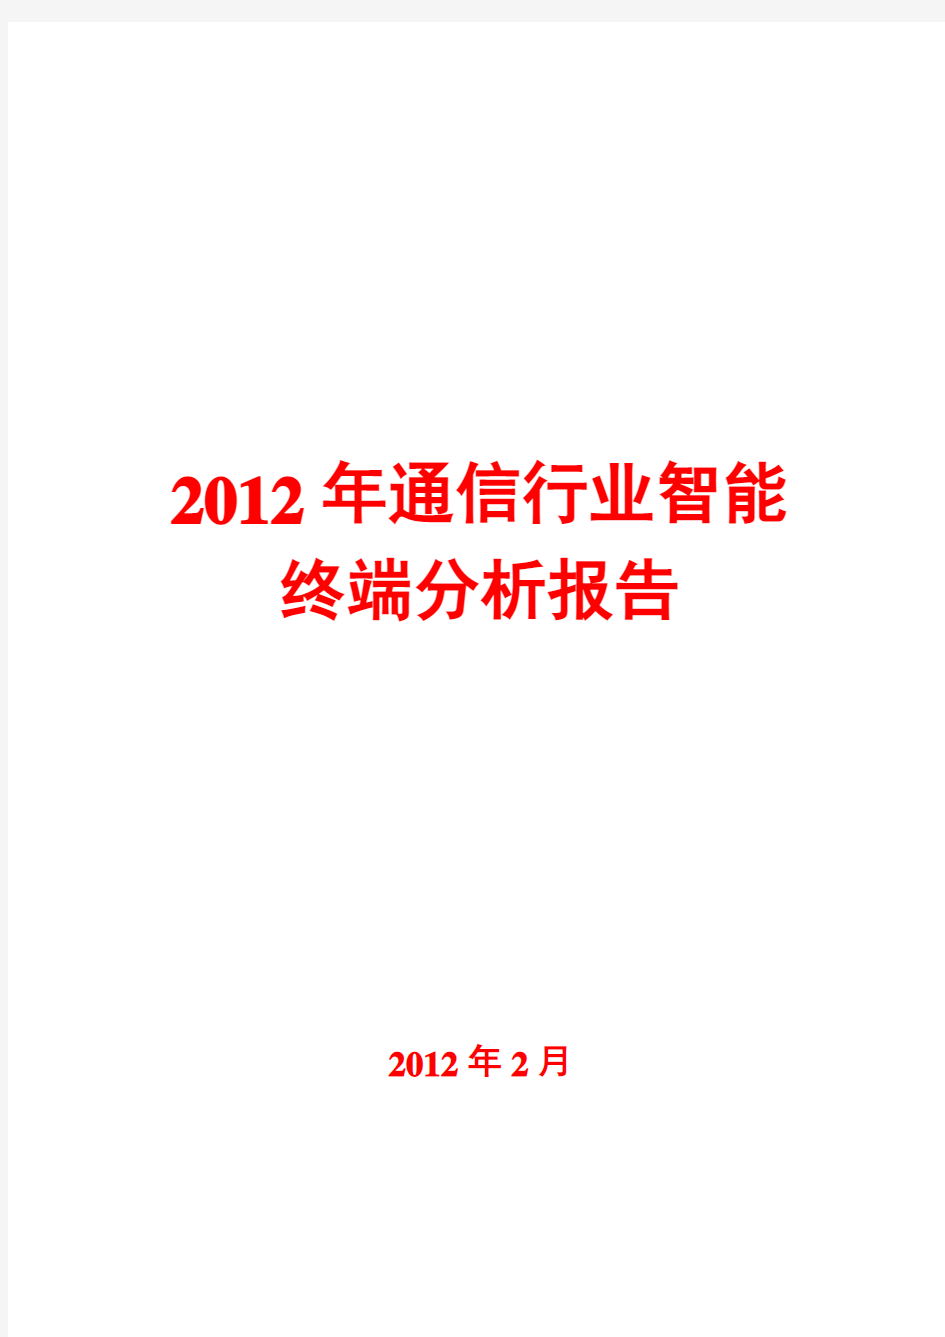 2012年通信行业智能终端分析报告